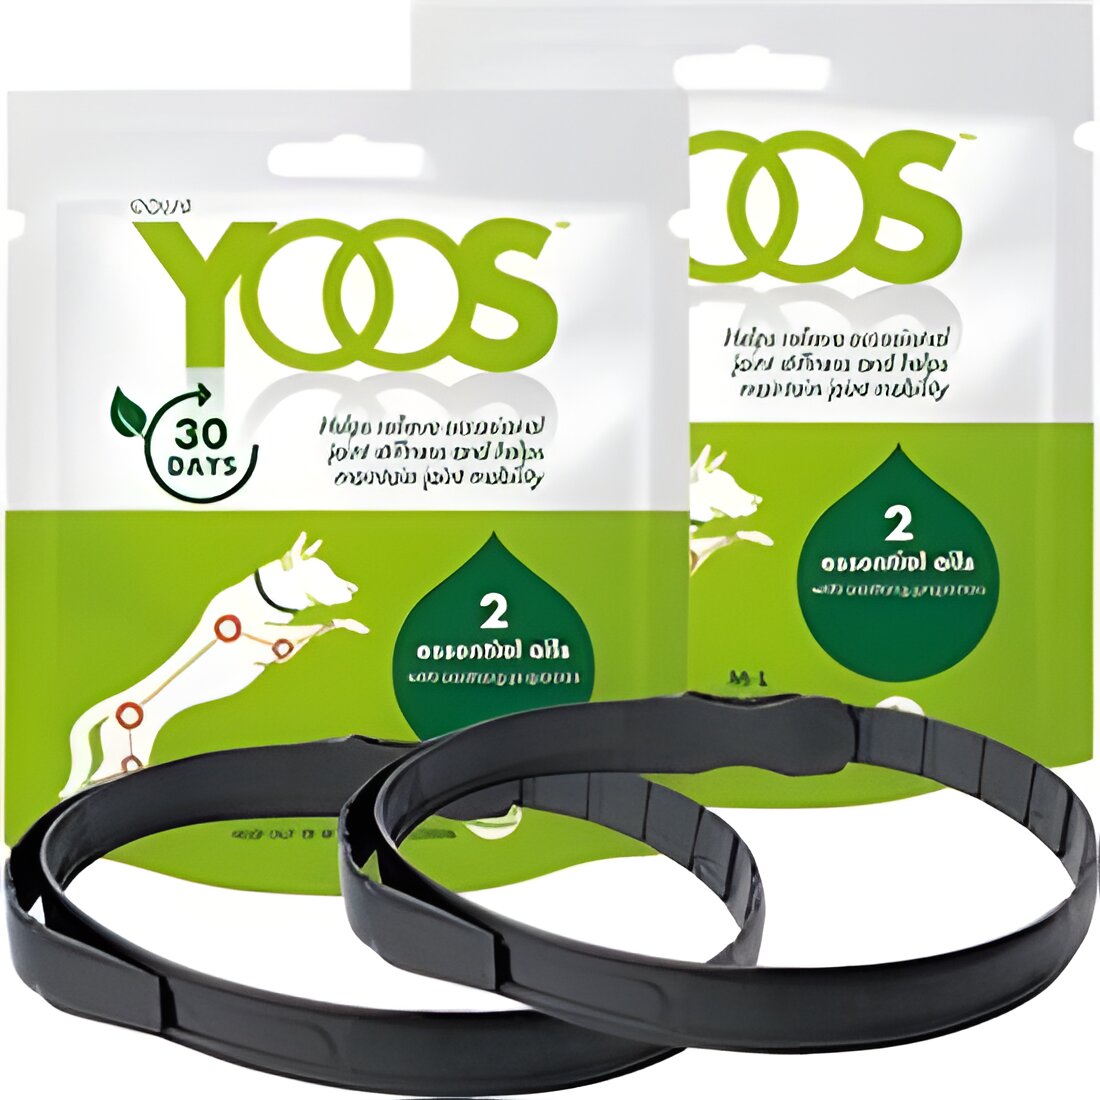 Free YOOS Essential Oil Dog Collar